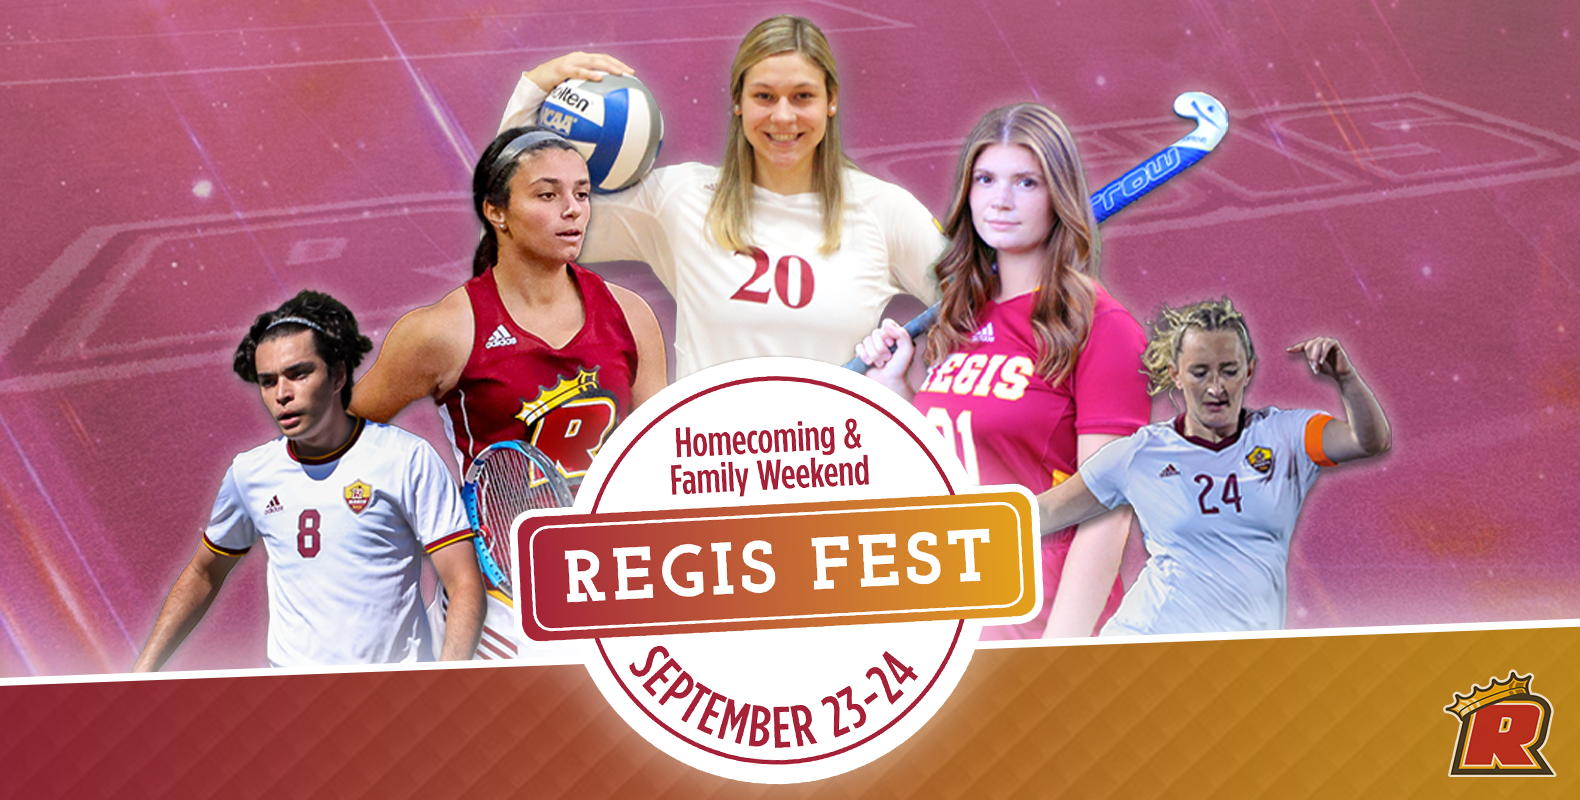 Regis Fest Athletic Events Set for September 24